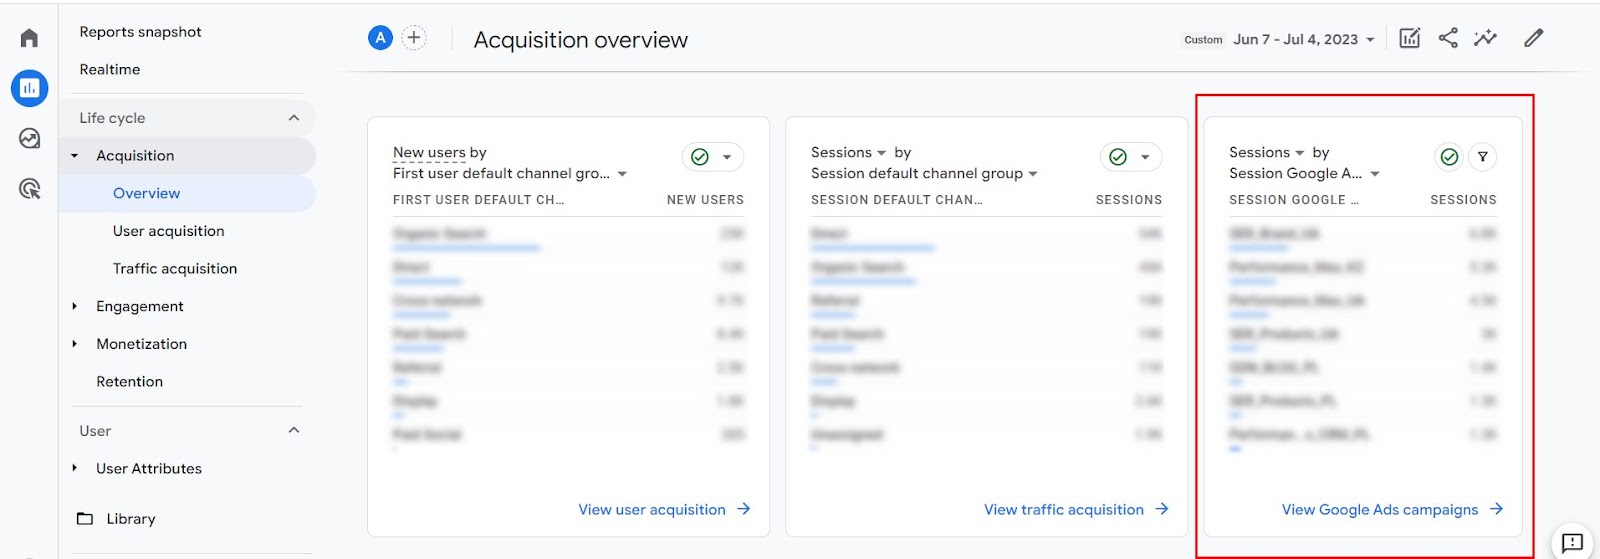 Google Analytics 4, данные о звонках из кампаний Google Ads